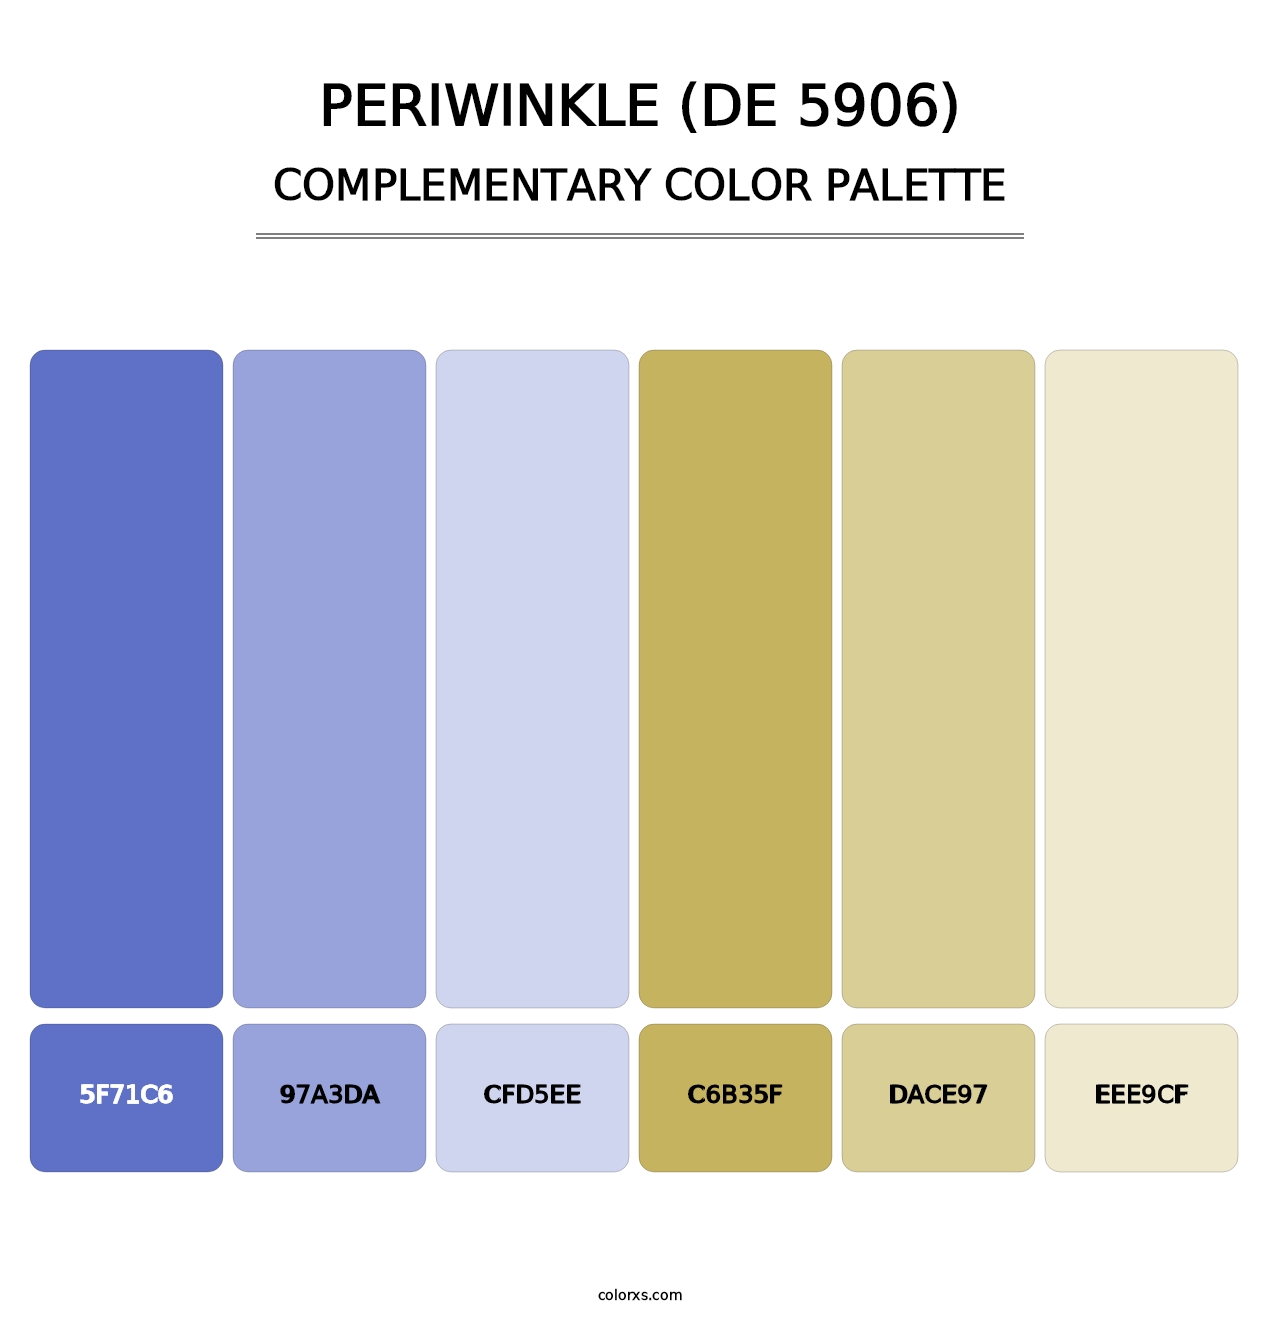 Periwinkle (DE 5906) - Complementary Color Palette